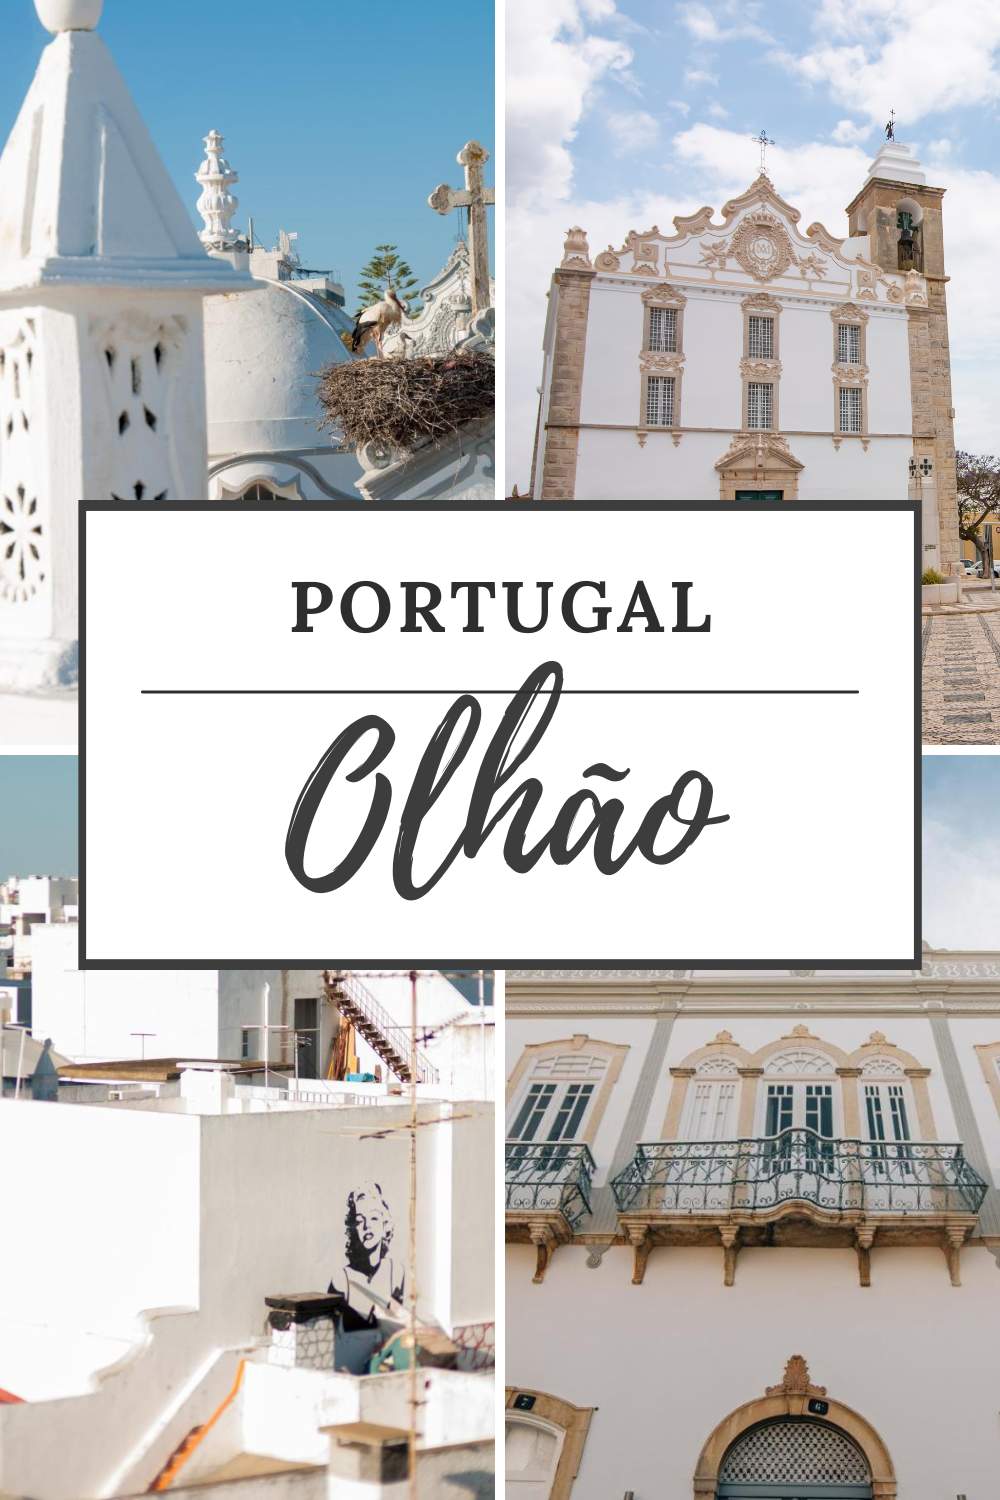 Olhão, Portugal: bekijk de leukste bezienswaardigheden in Olhão, één van de mooiste dorpjes in de Algarve | Mooistestedentrips.nl